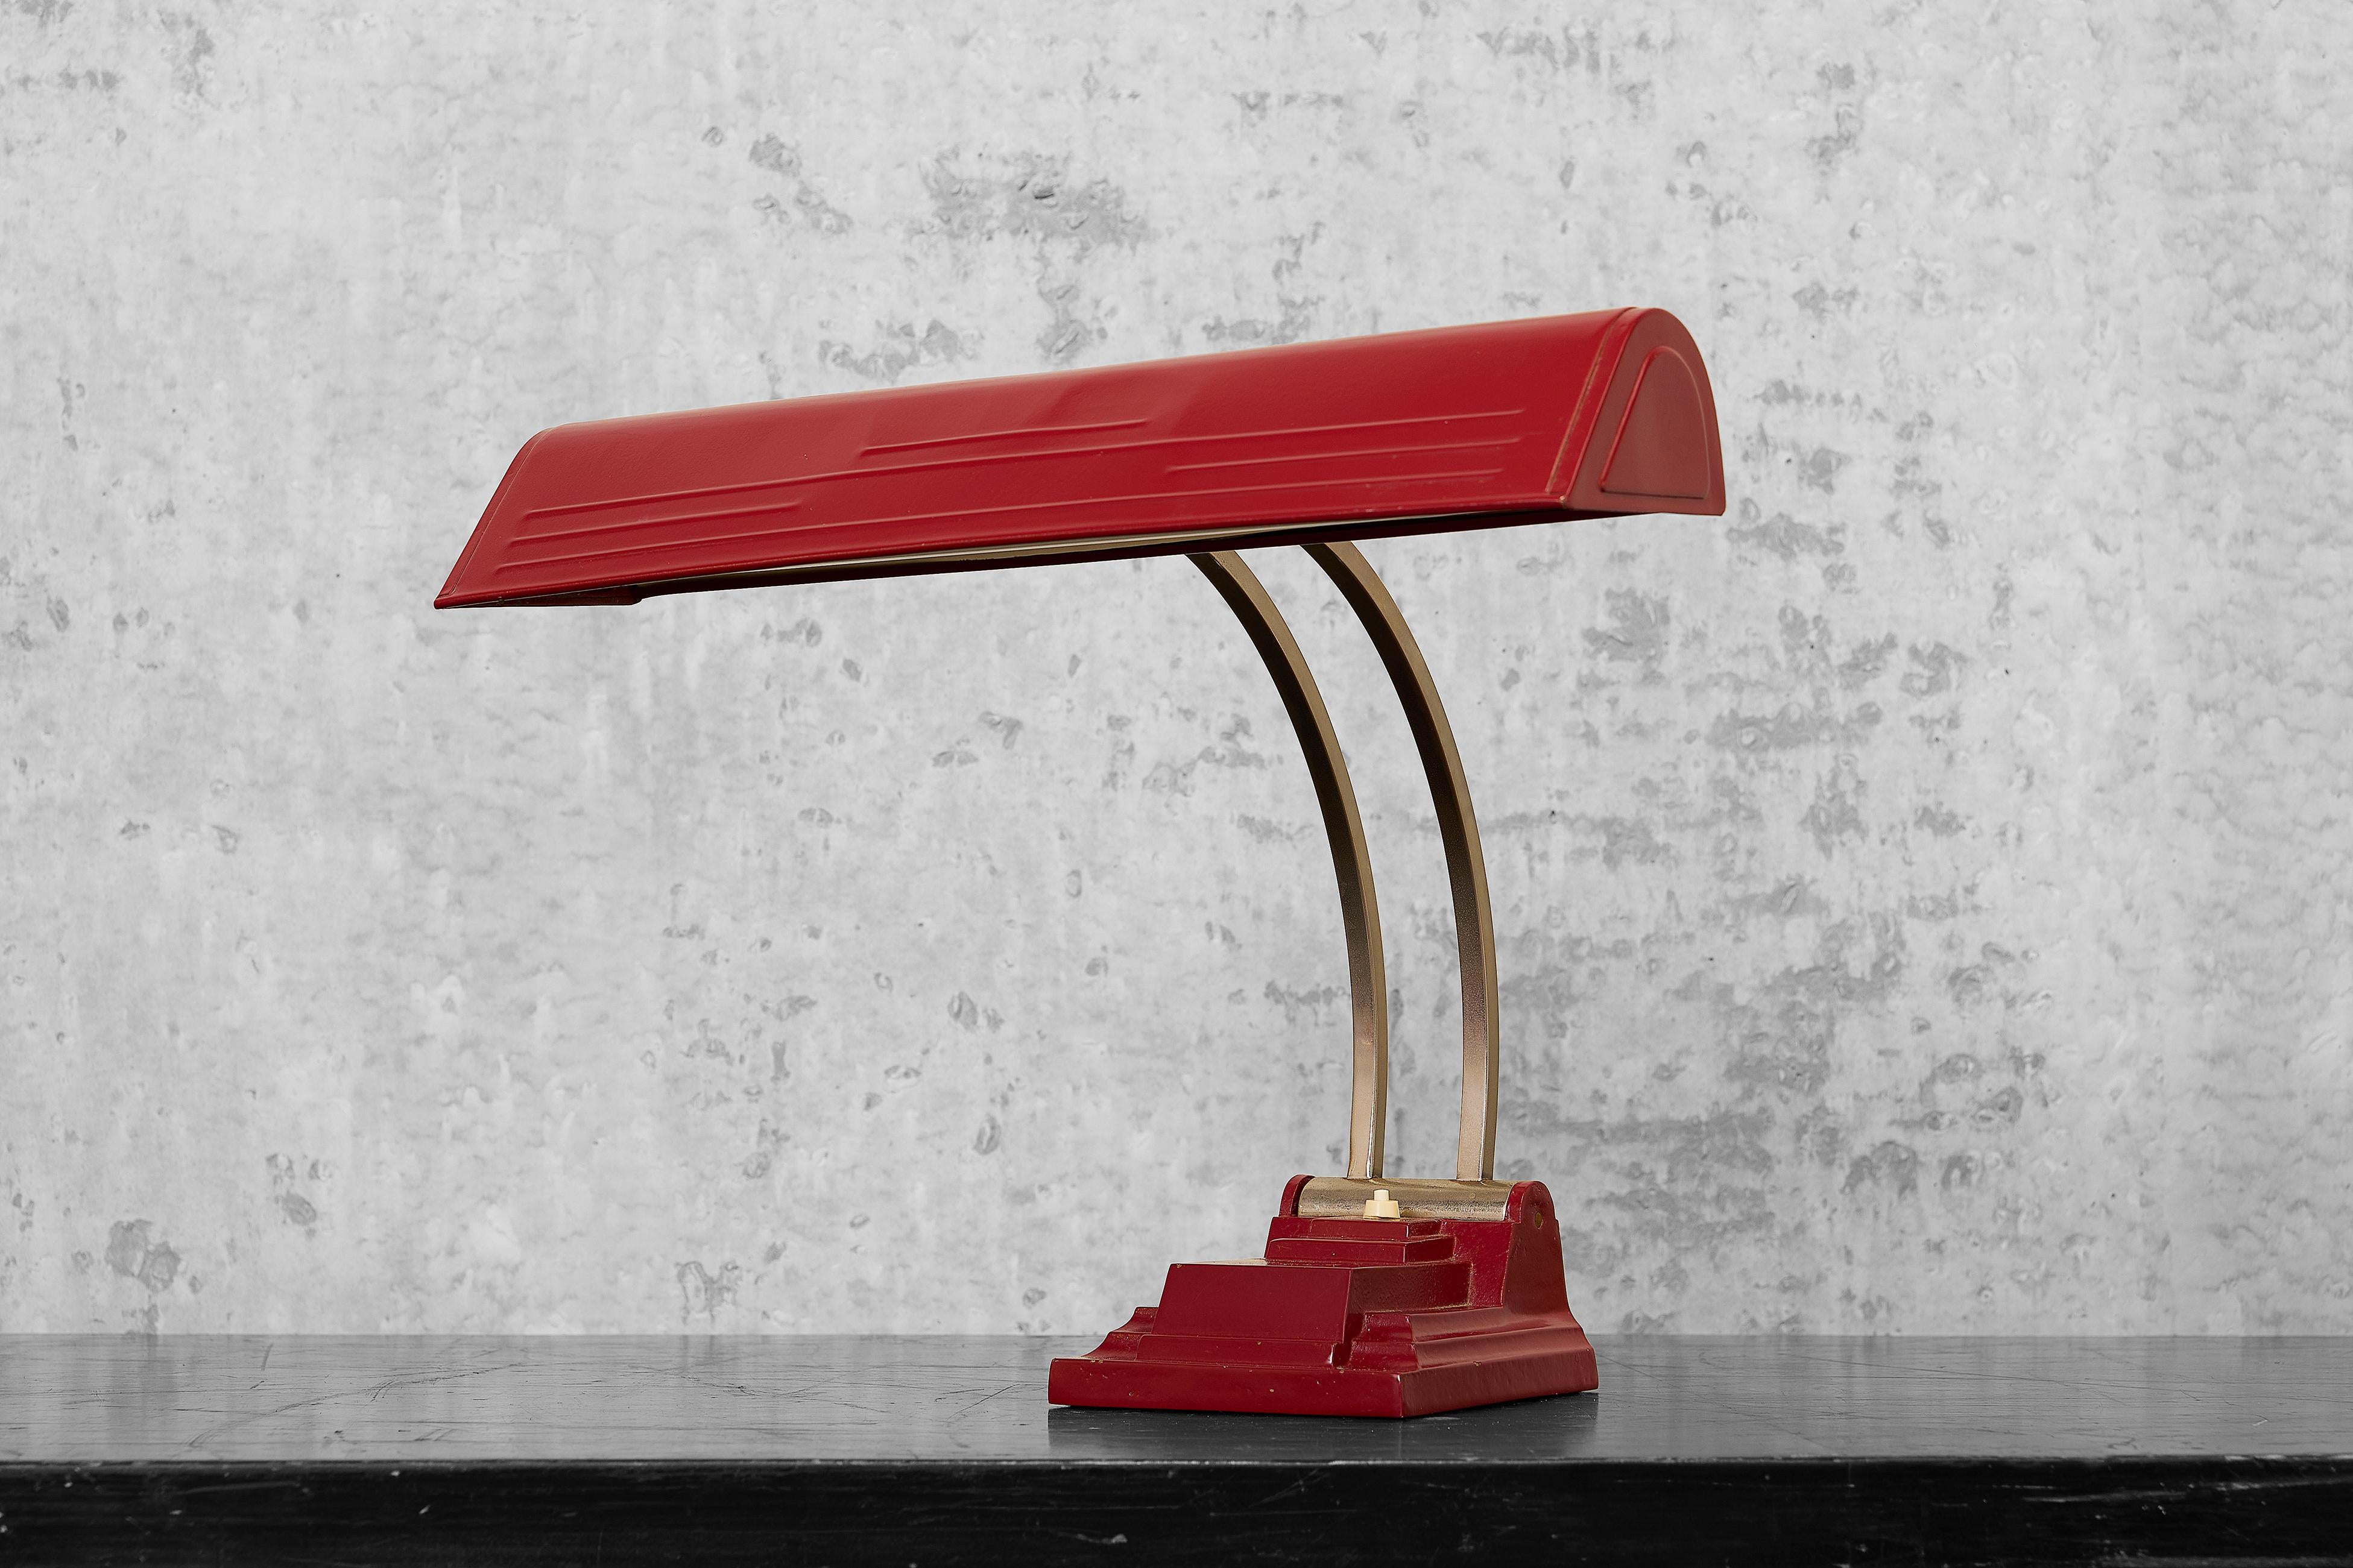 Lampe de bureau industrielle robuste de couleur rouge bordeaux avec une lumière fluorescente. La lampe a une base solide et lourde en fer rectangulaire, une tige incurvée en chrome et un abat-jour à charnière. La lampe a été repeinte et recâblée. La